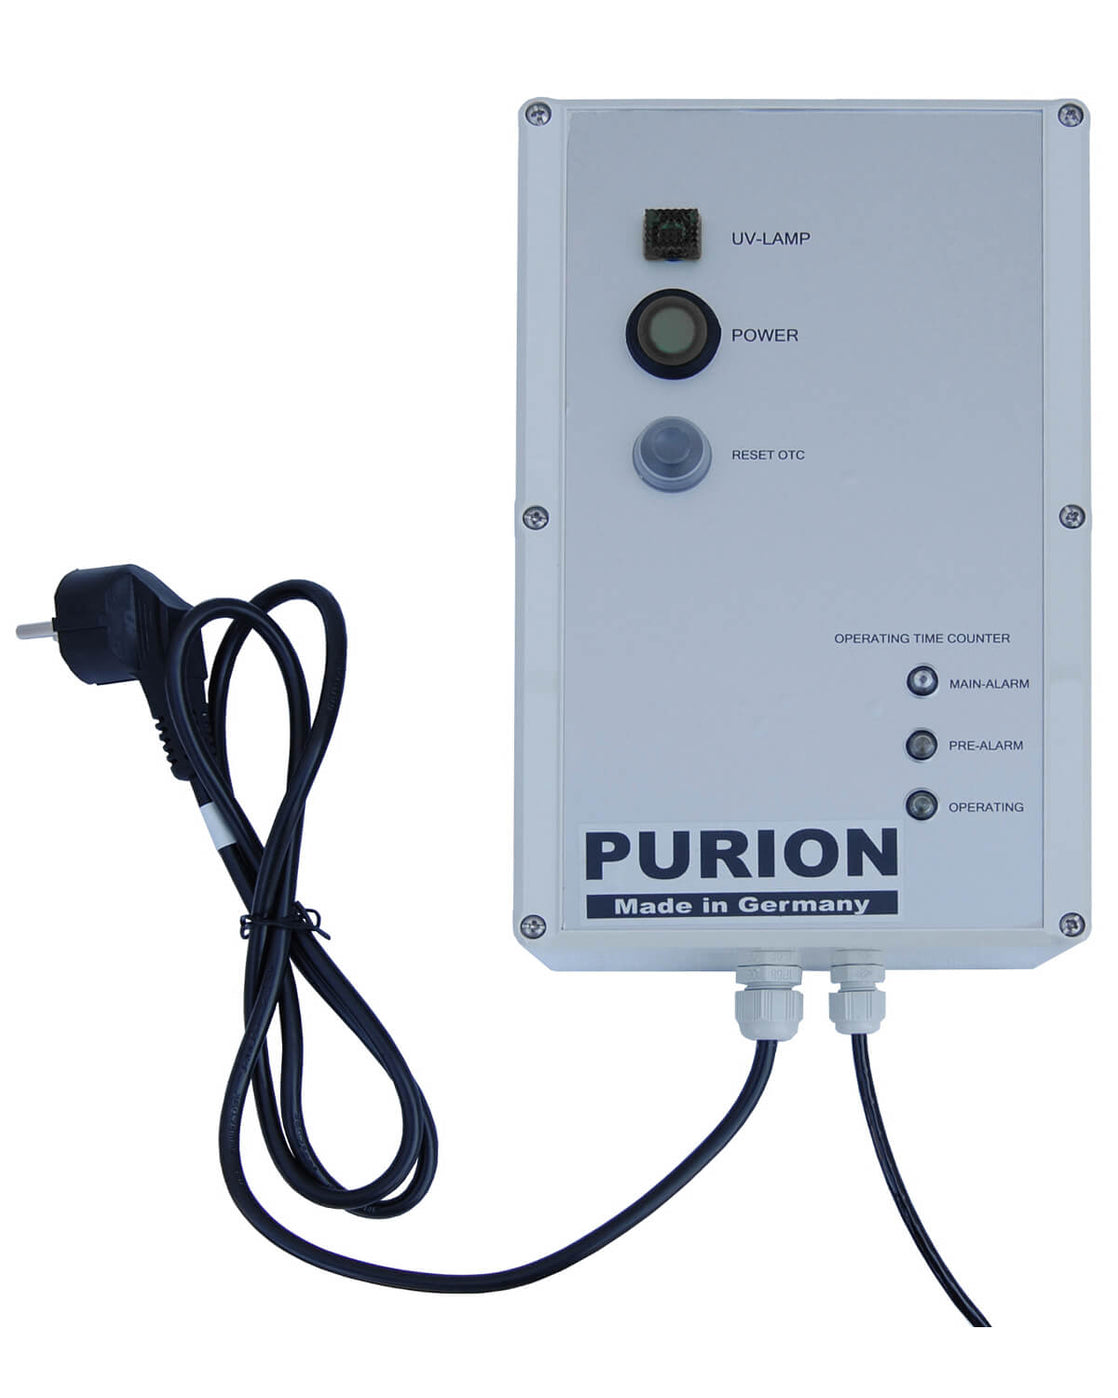 PURION 2500 36 W OTC Bundle der PURION GmbH ist eine UV-C-Desinfektionsanlage, die frisch desinfiziertes Trinkwasser liefert.